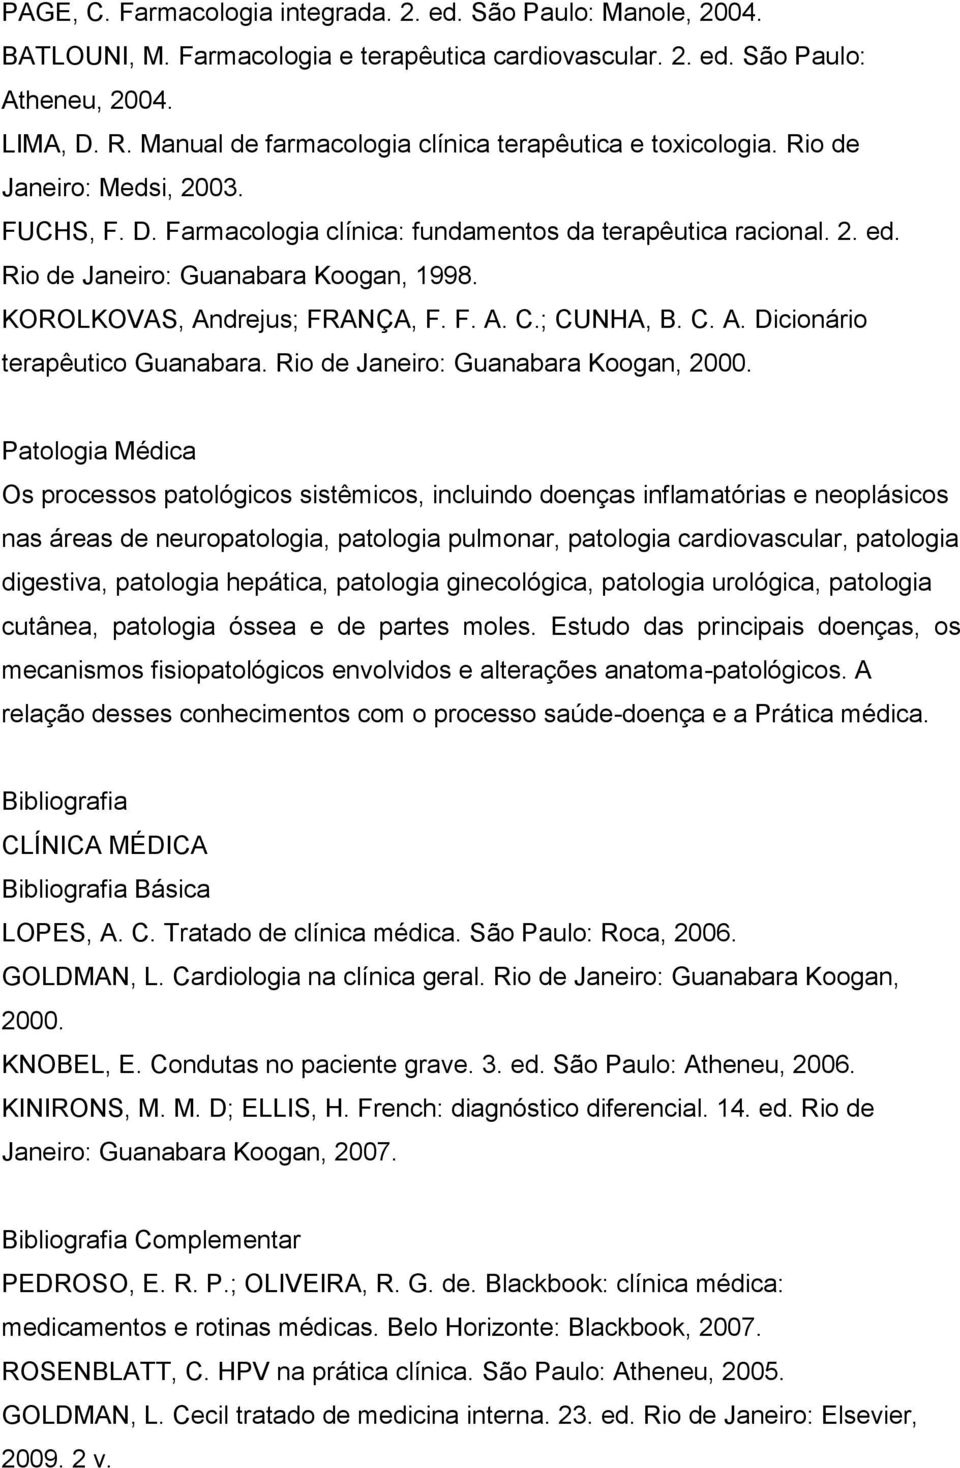 Rio de Janeiro: Guanabara Koogan, 1998. KOROLKOVAS, Andrejus; FRANÇA, F. F. A. C.; CUNHA, B. C. A. Dicionário terapêutico Guanabara. Rio de Janeiro: Guanabara Koogan, 2000.